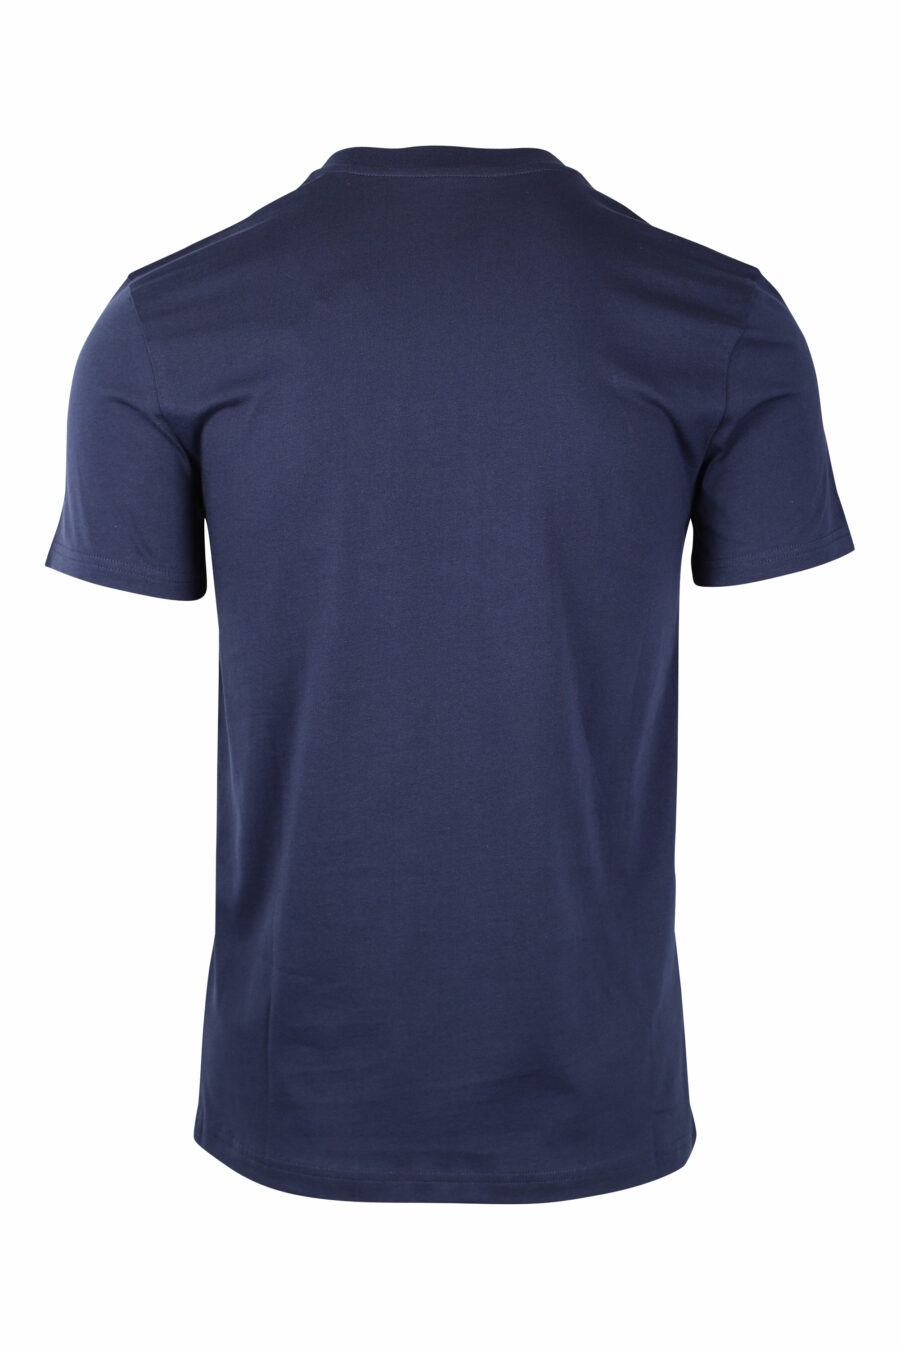 T-shirt bleu foncé avec double question monochrome maxilogo - IMG 1454